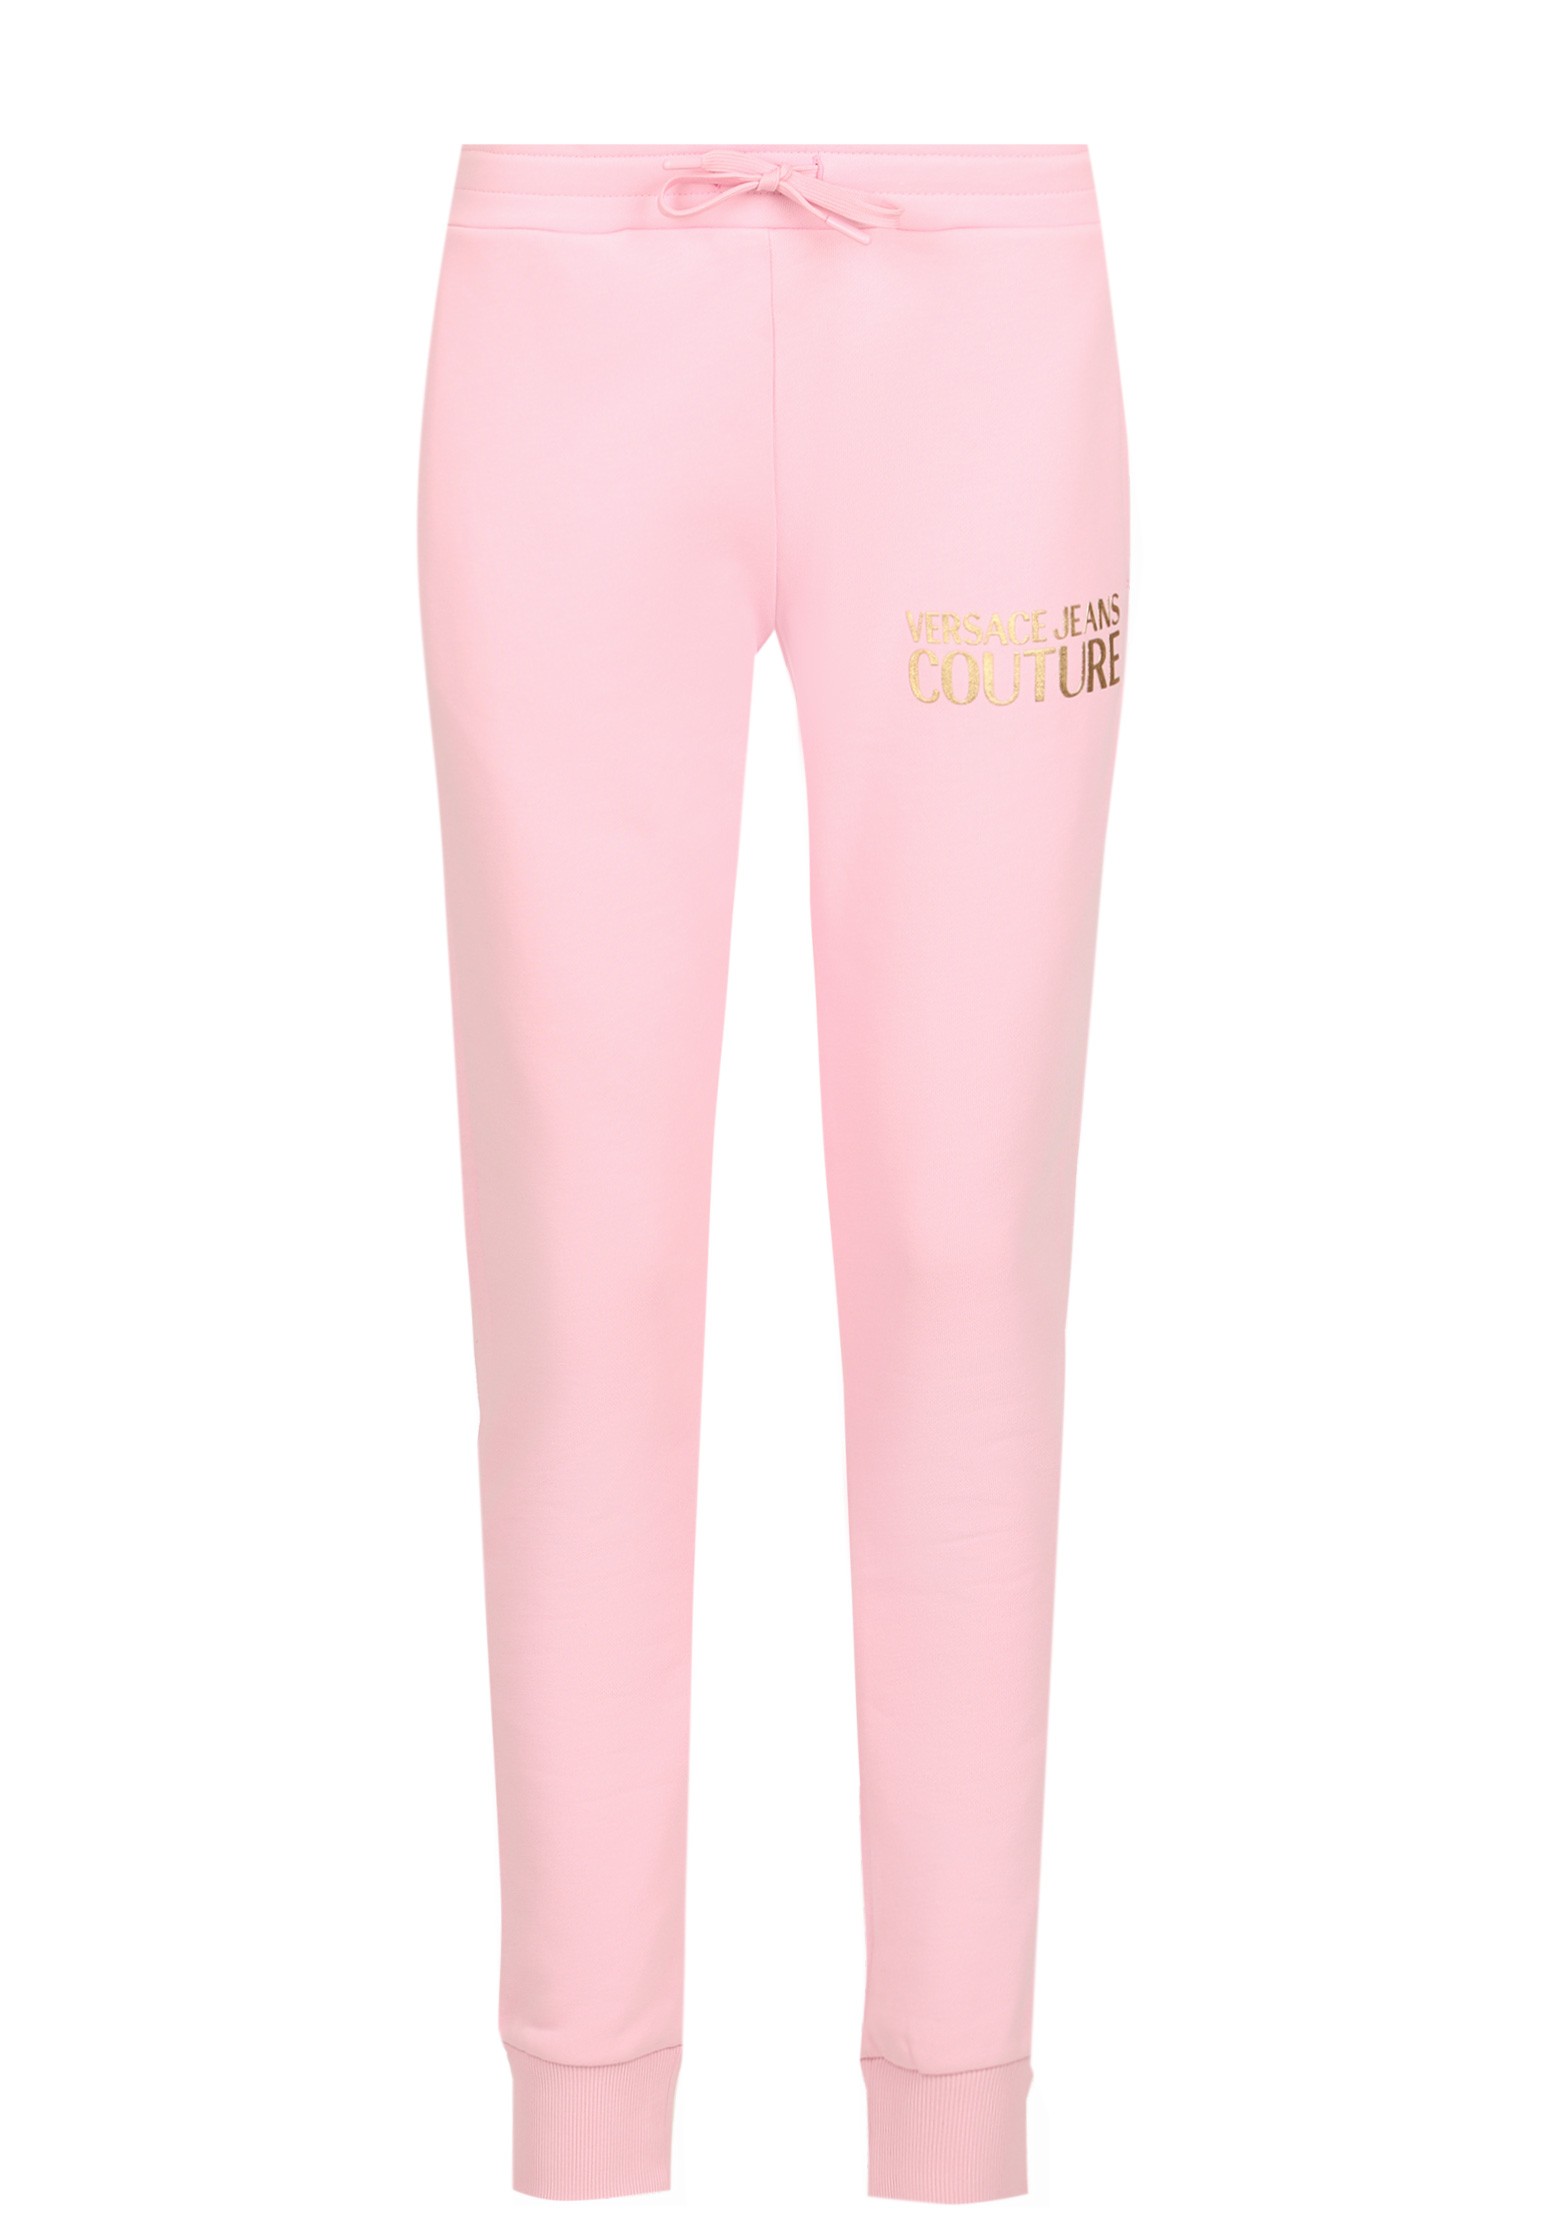 Спортивные брюки VERSACE JEANS COUTURE Розовый 125388 